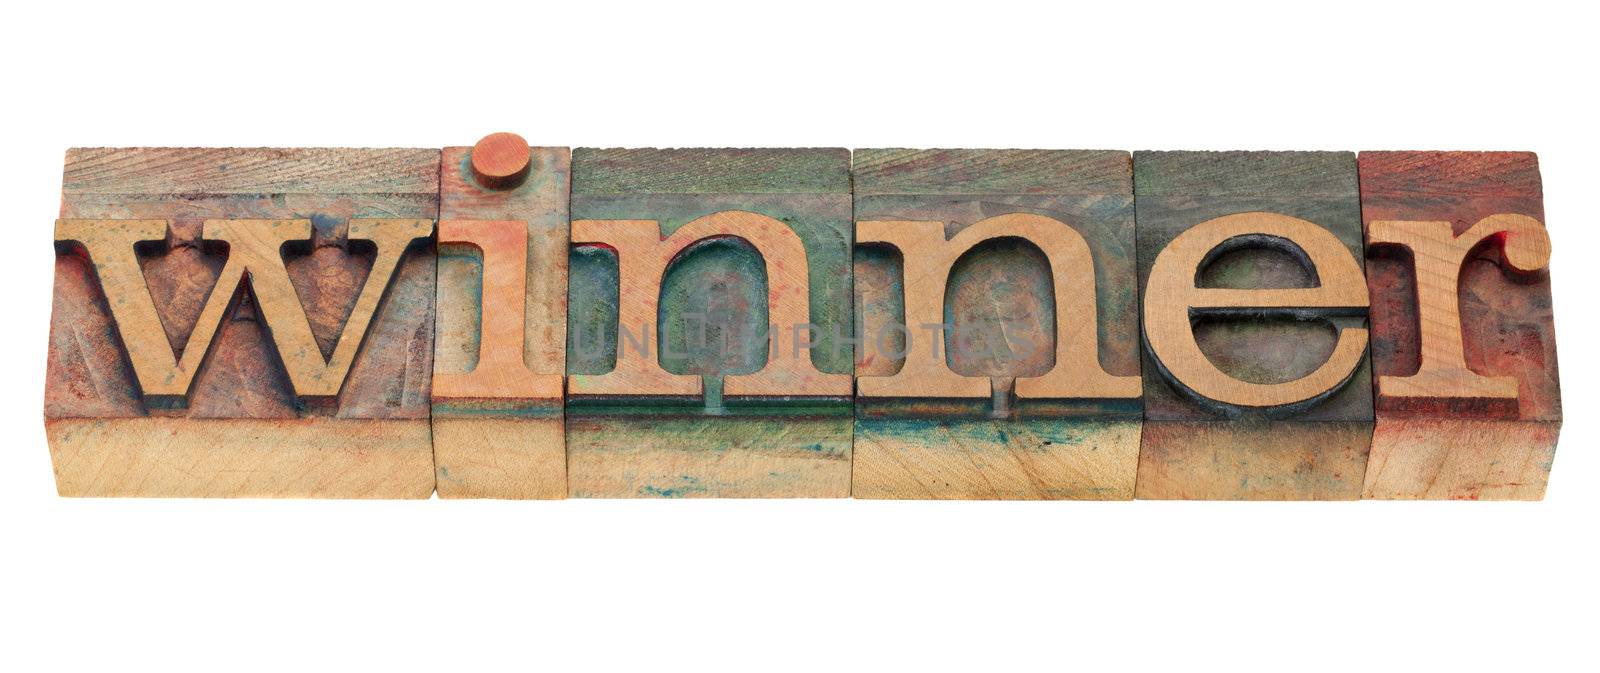 winner - isolated word in vintage wood letterpress printing blocks